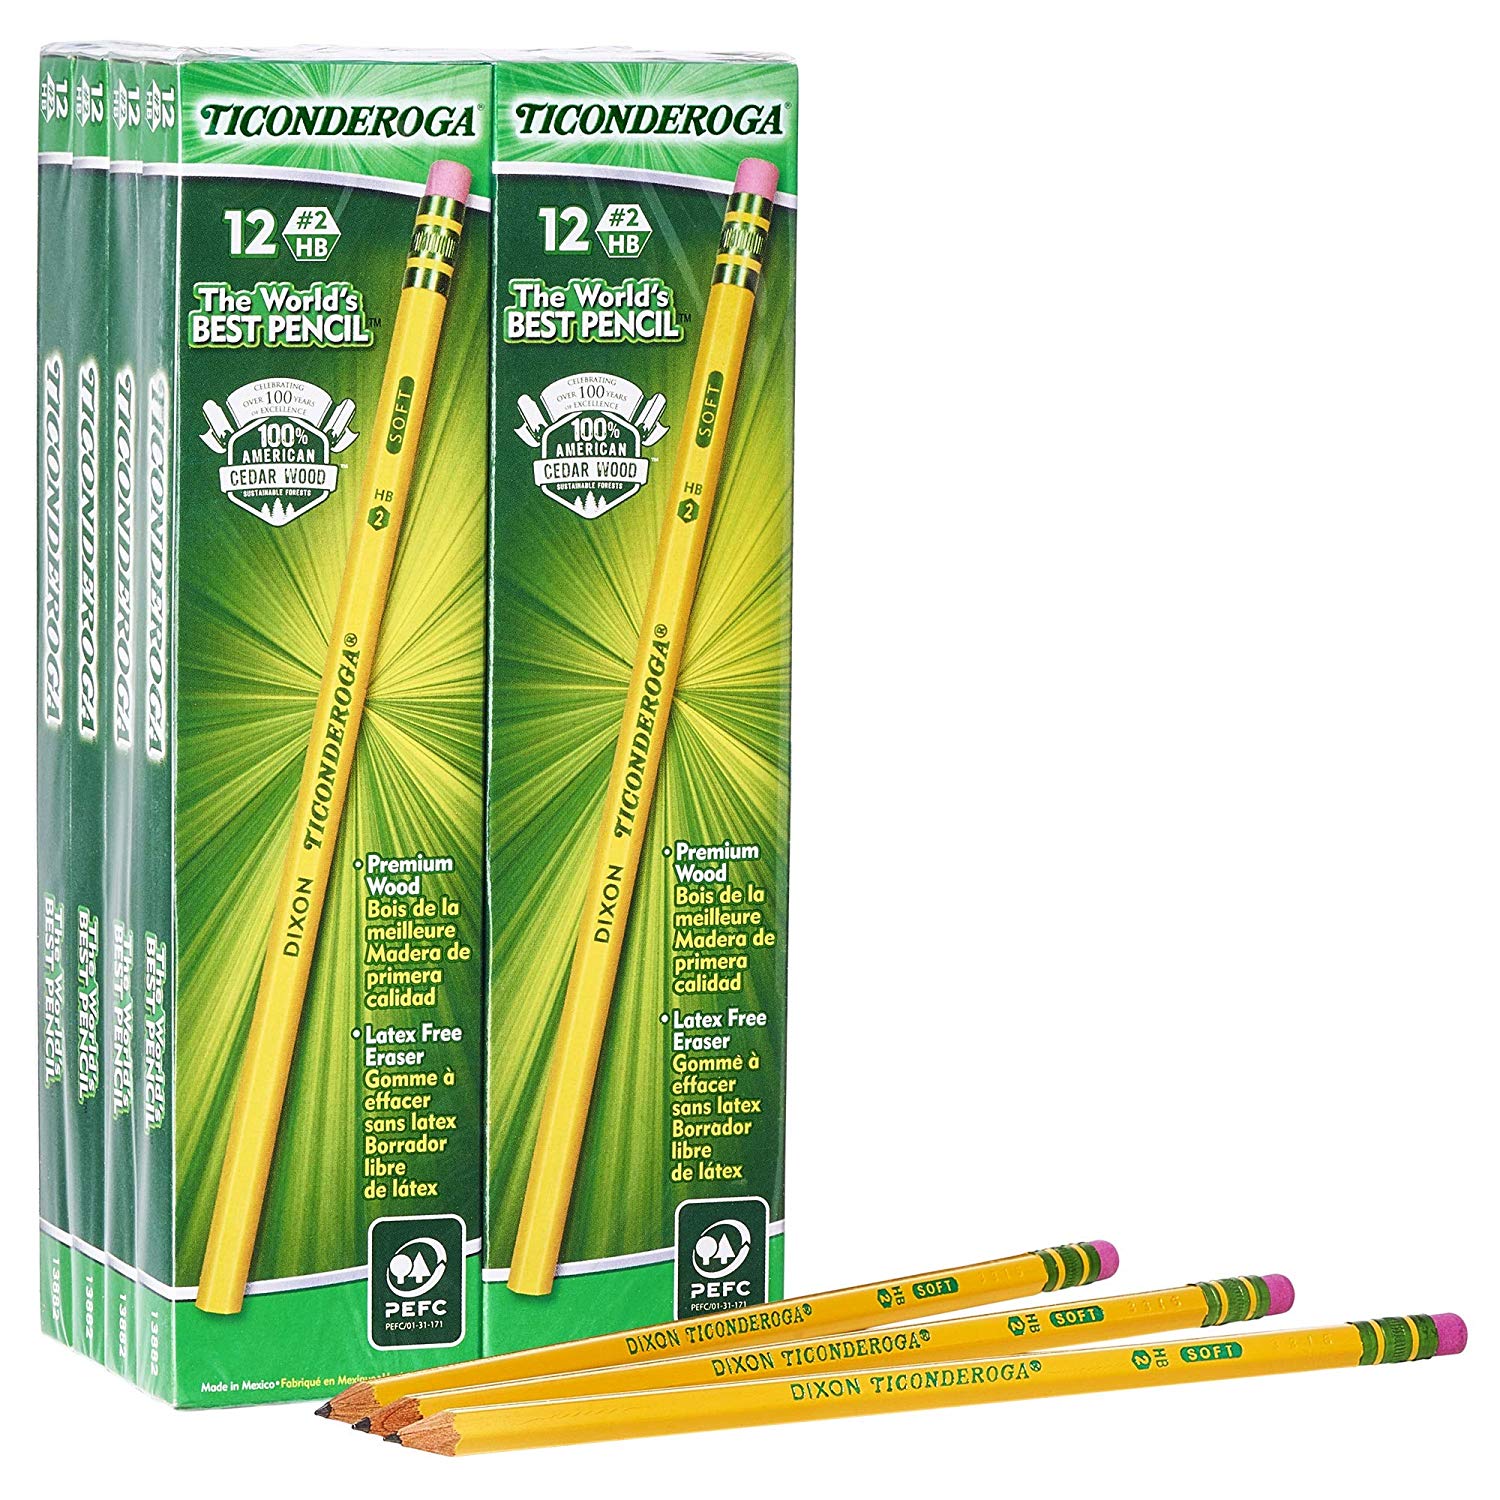 DEAL ALERT: The BEST Pencils…. Ticonderoga Pencils 23% off!